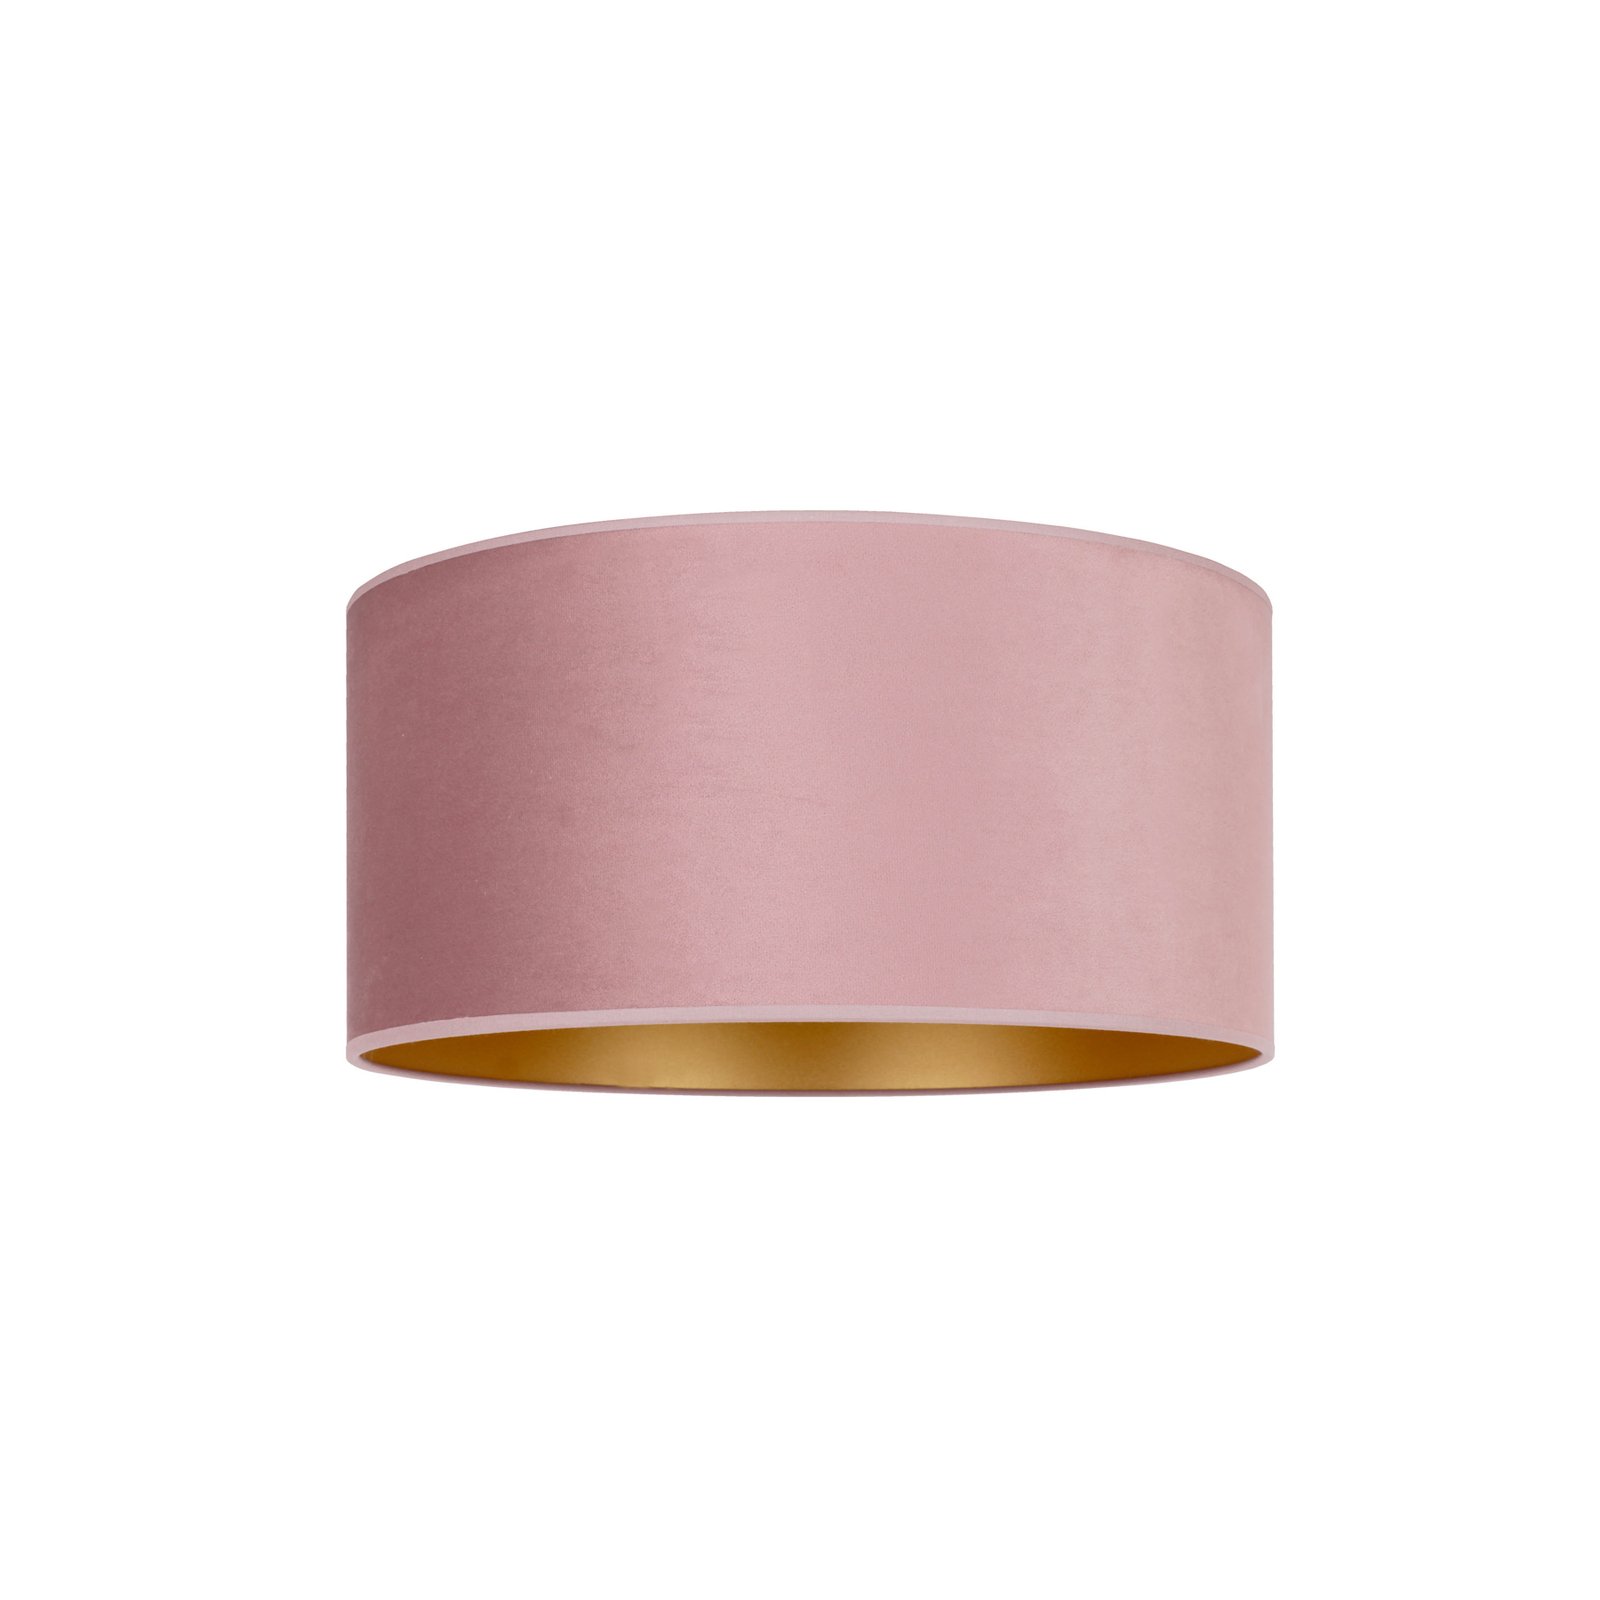 Plafón Golden Roller Ø 60cm rosa claro/oro